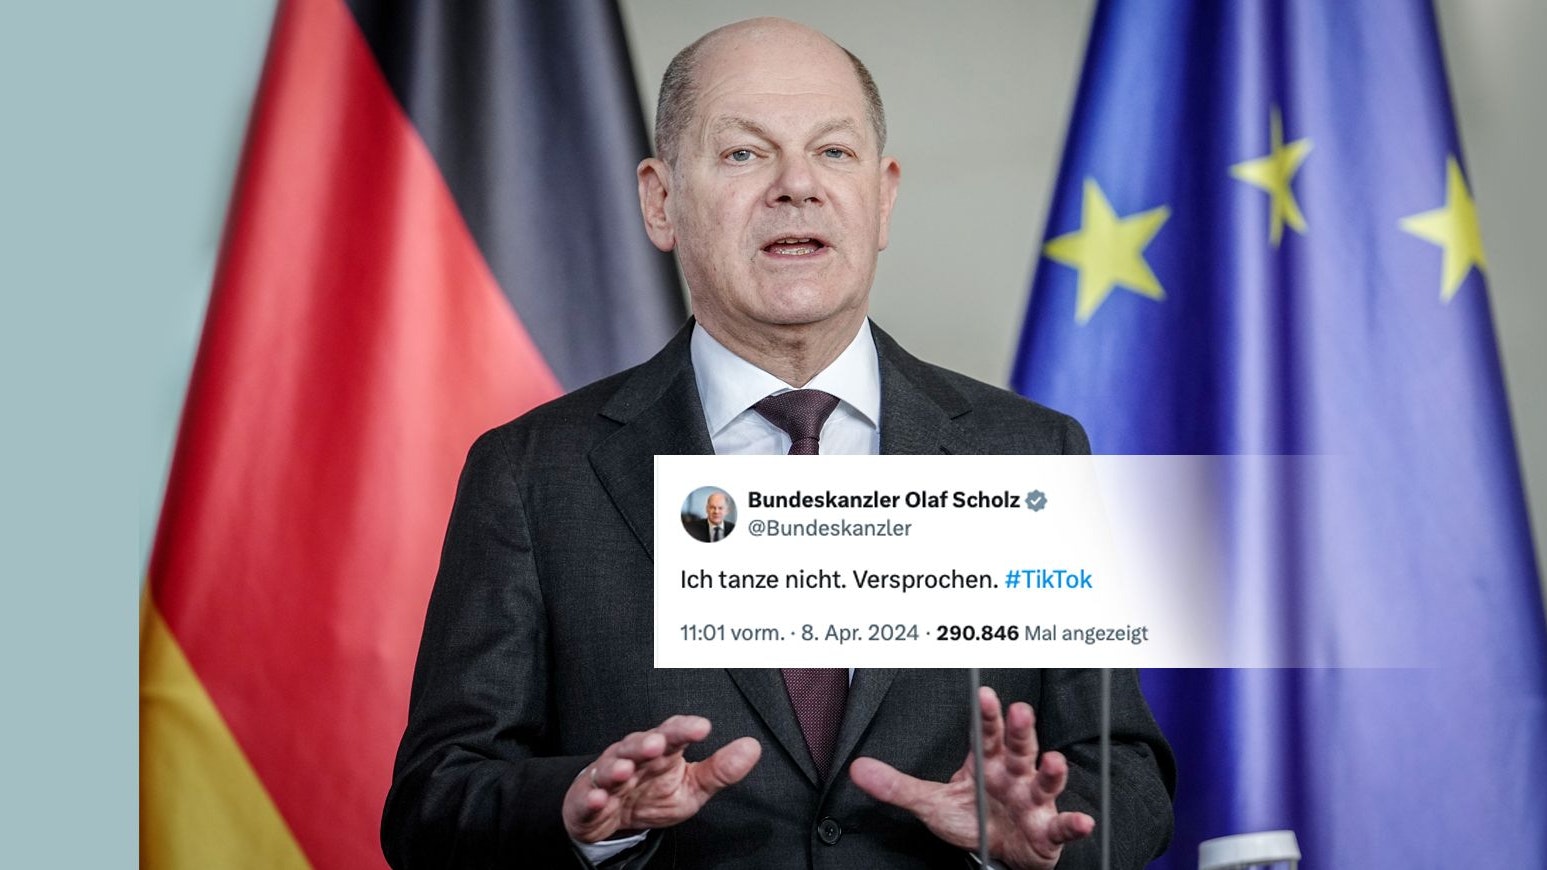 Der deutsche Bundeskanzler Olaf Scholz ist seit 8. April 2024 ein bisschen auf TikTok